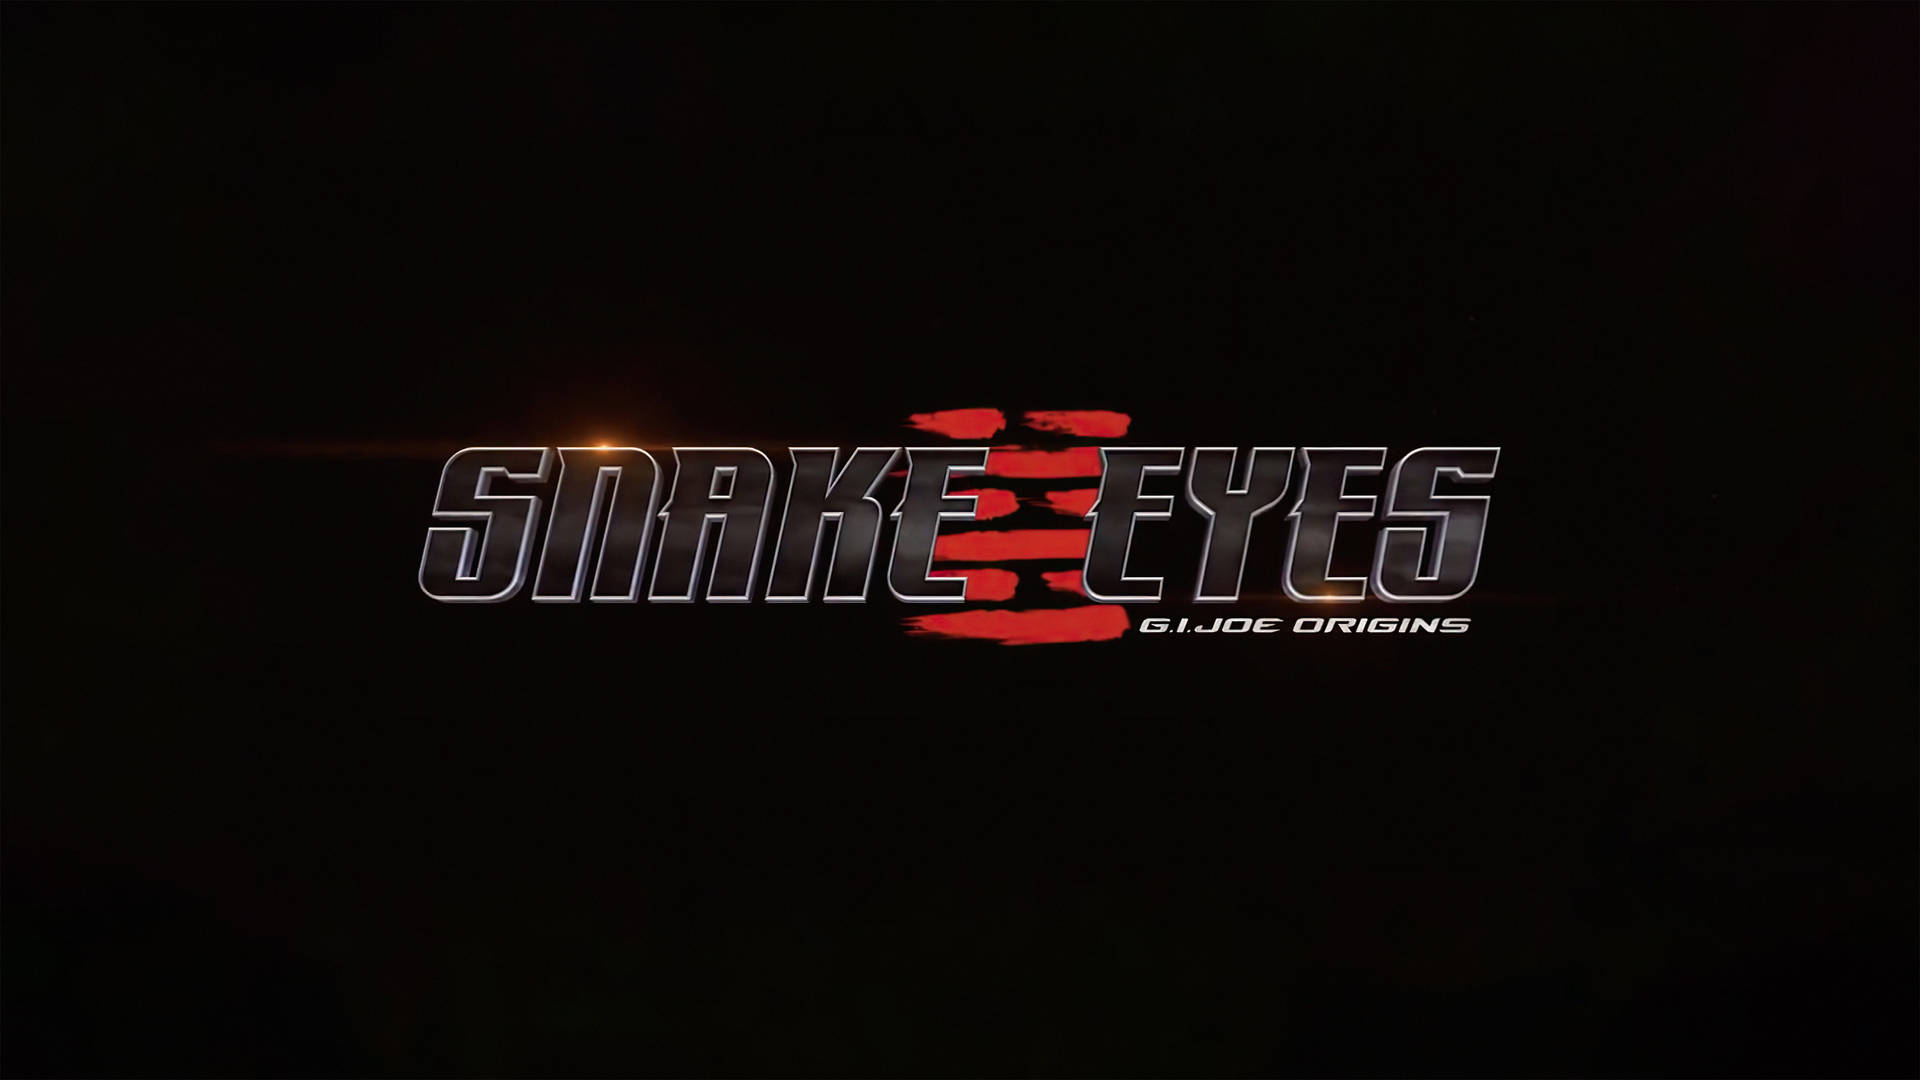 Snake Eyes G.i. Joe Origins Poster Wallpaper